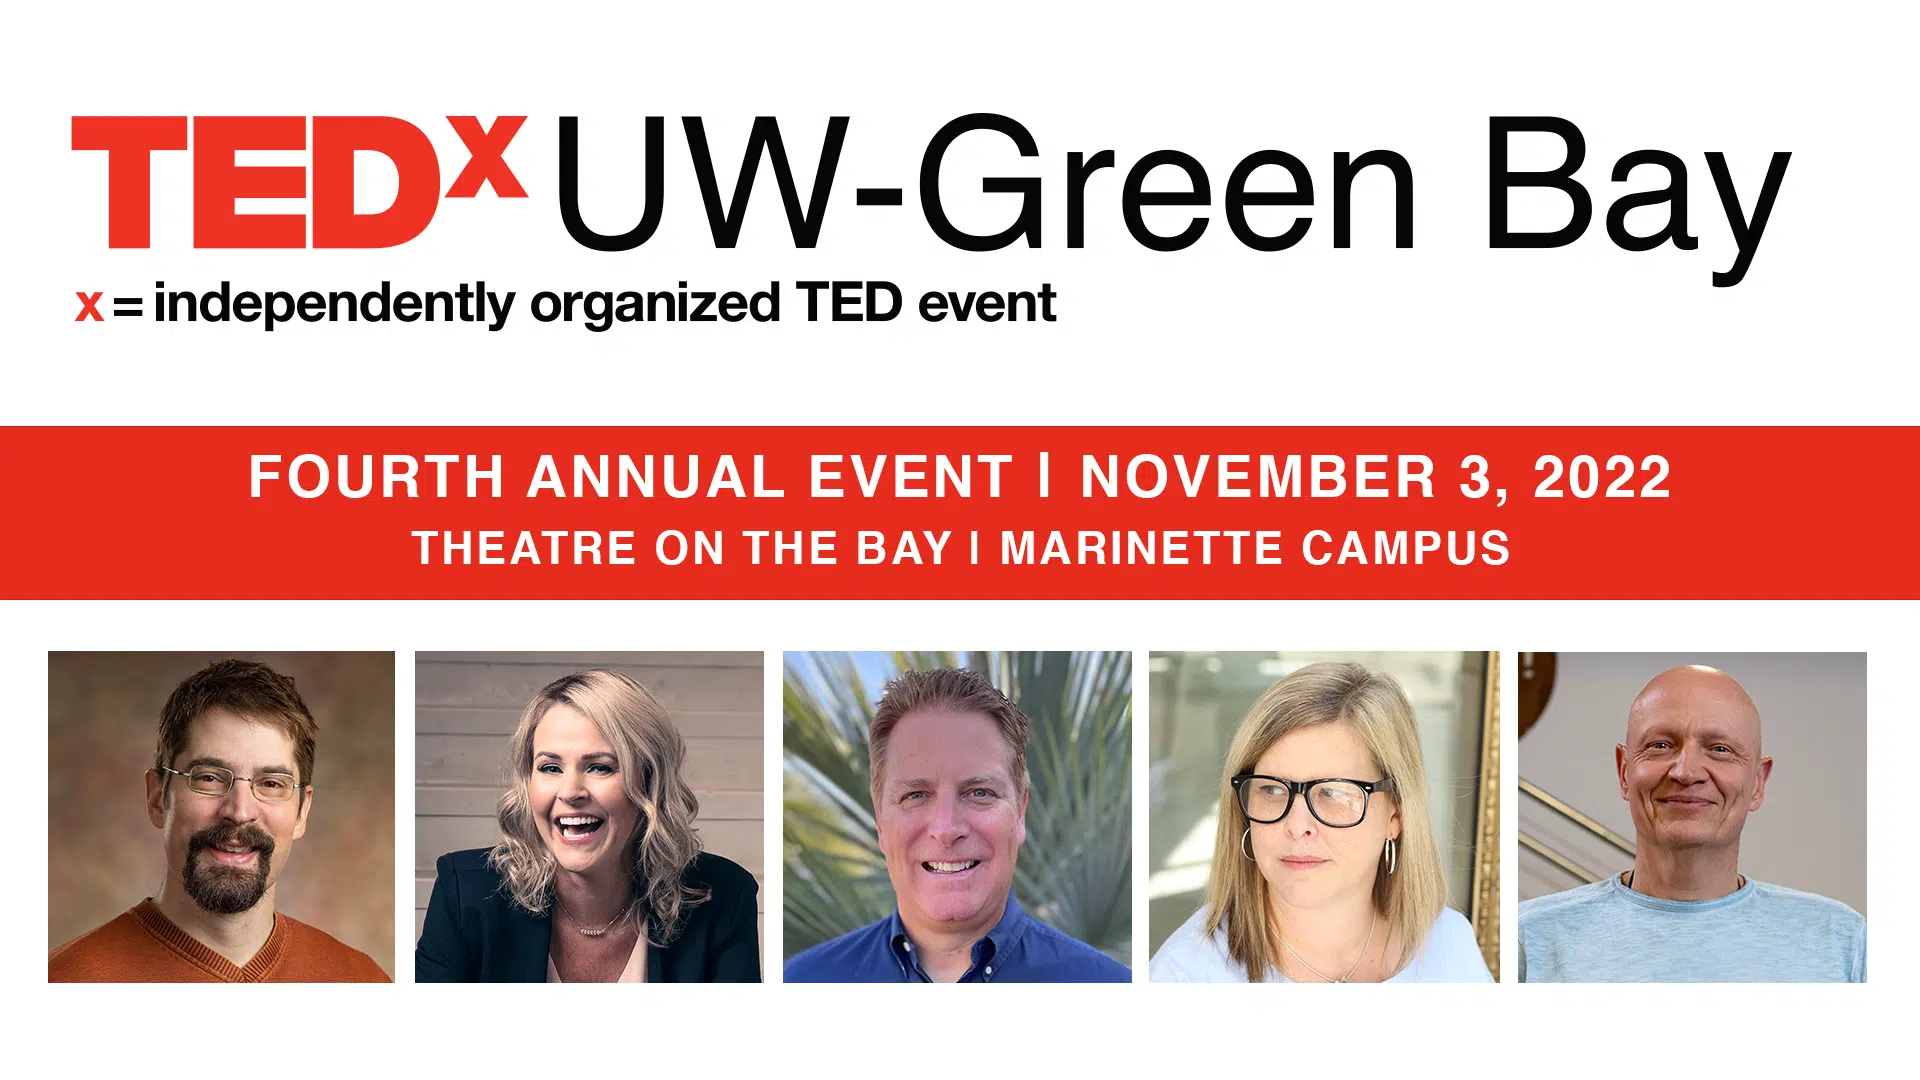 Speaker List Announced for TEDxUW-Green Bay 2022